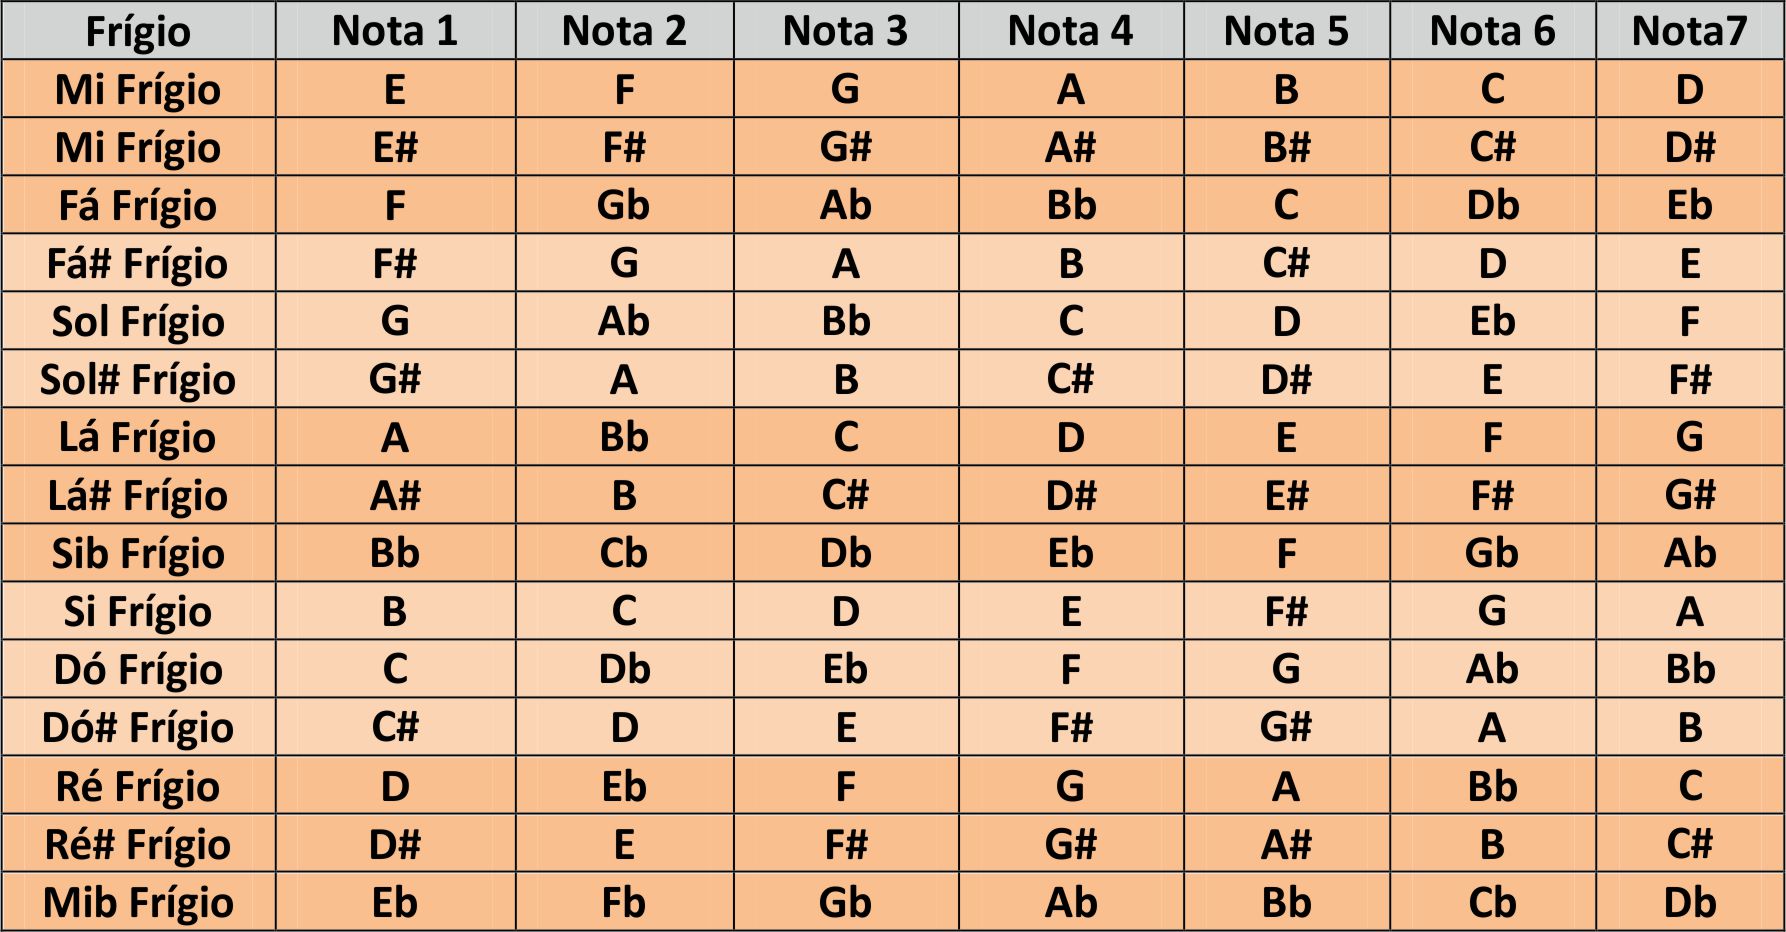 Notas e escalas musicais: quais são, origem - Mundo Educação